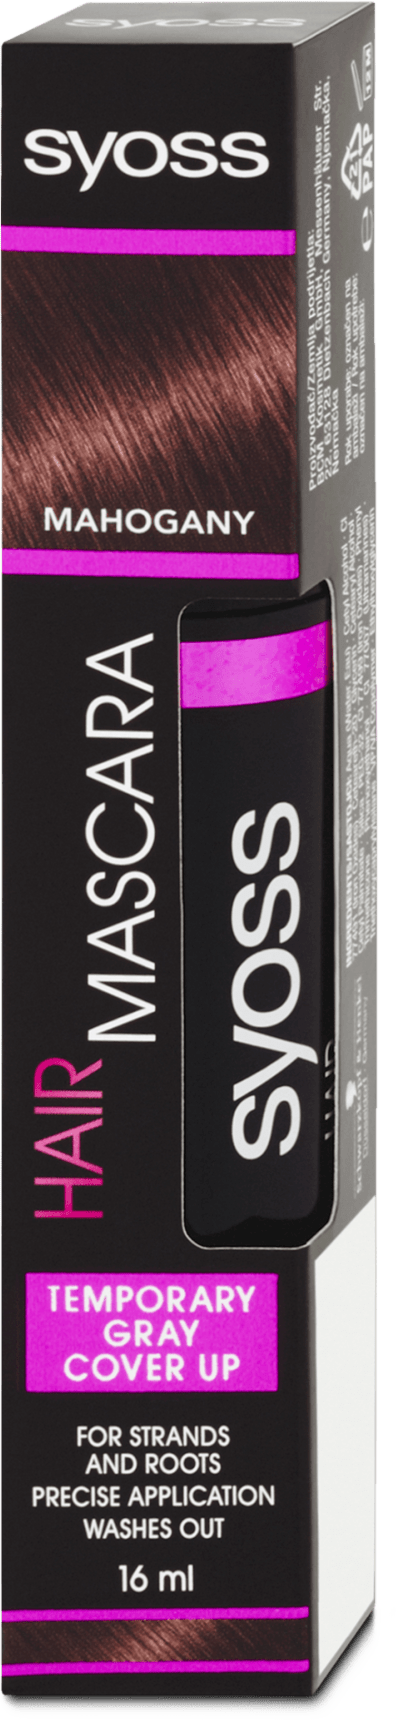 Syoss Mahogany hair mascara, 16 ml